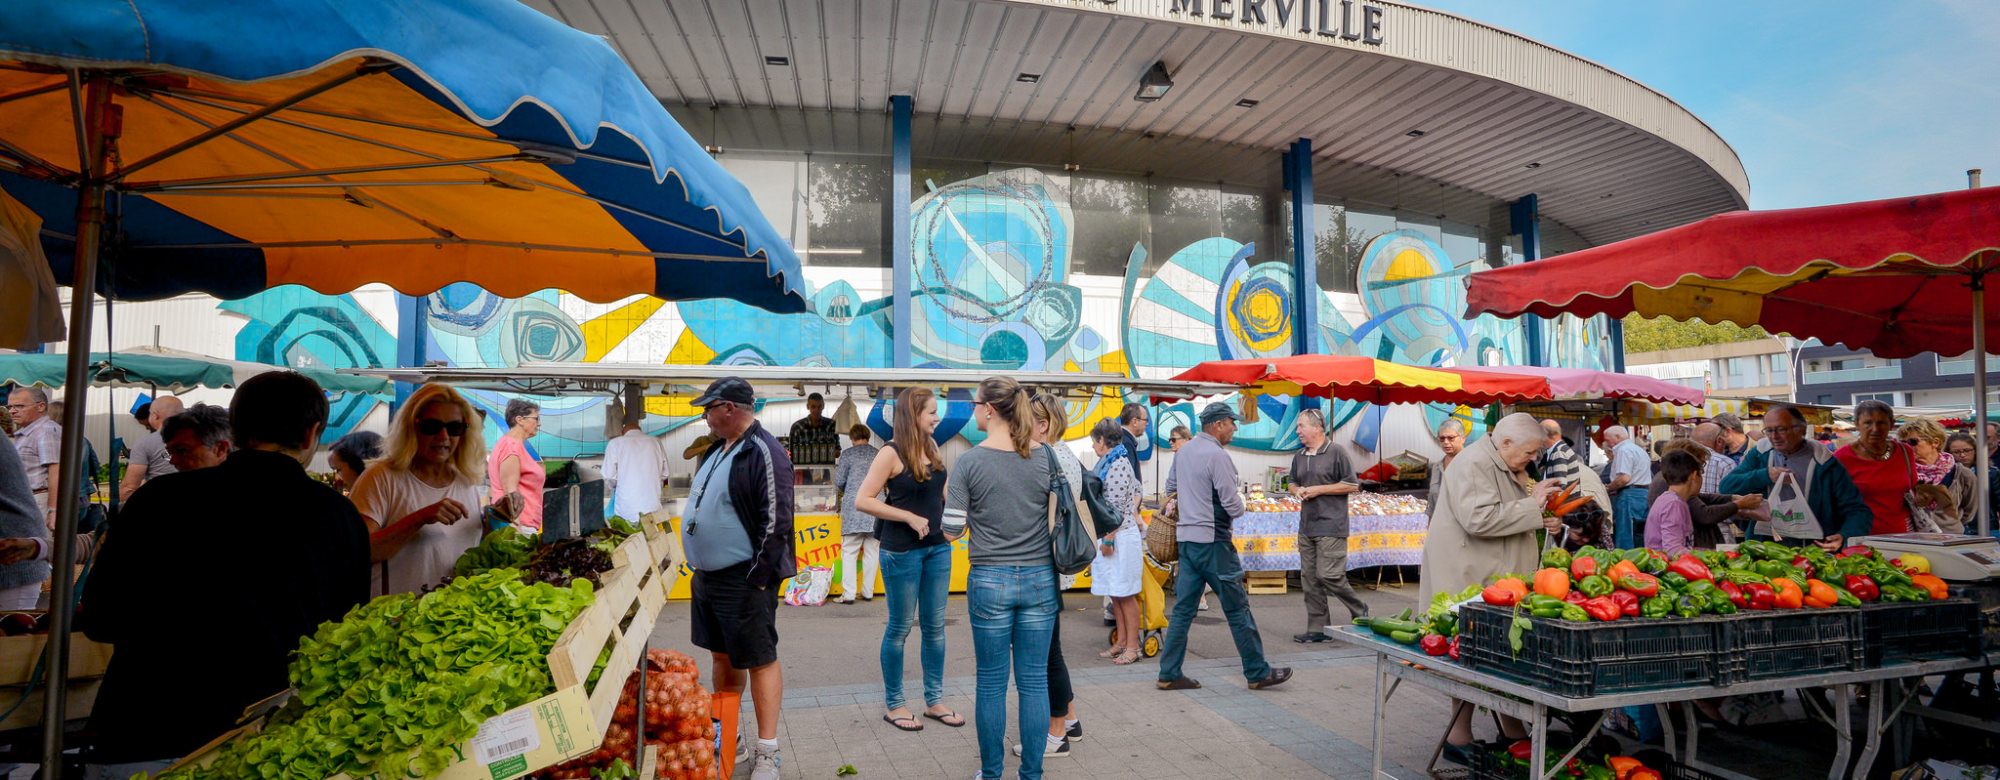 Der Merville-Markt in Lorient, jeden Mittwoch- und Samstagmorgen (Morbihan, Süd-Bretagne)